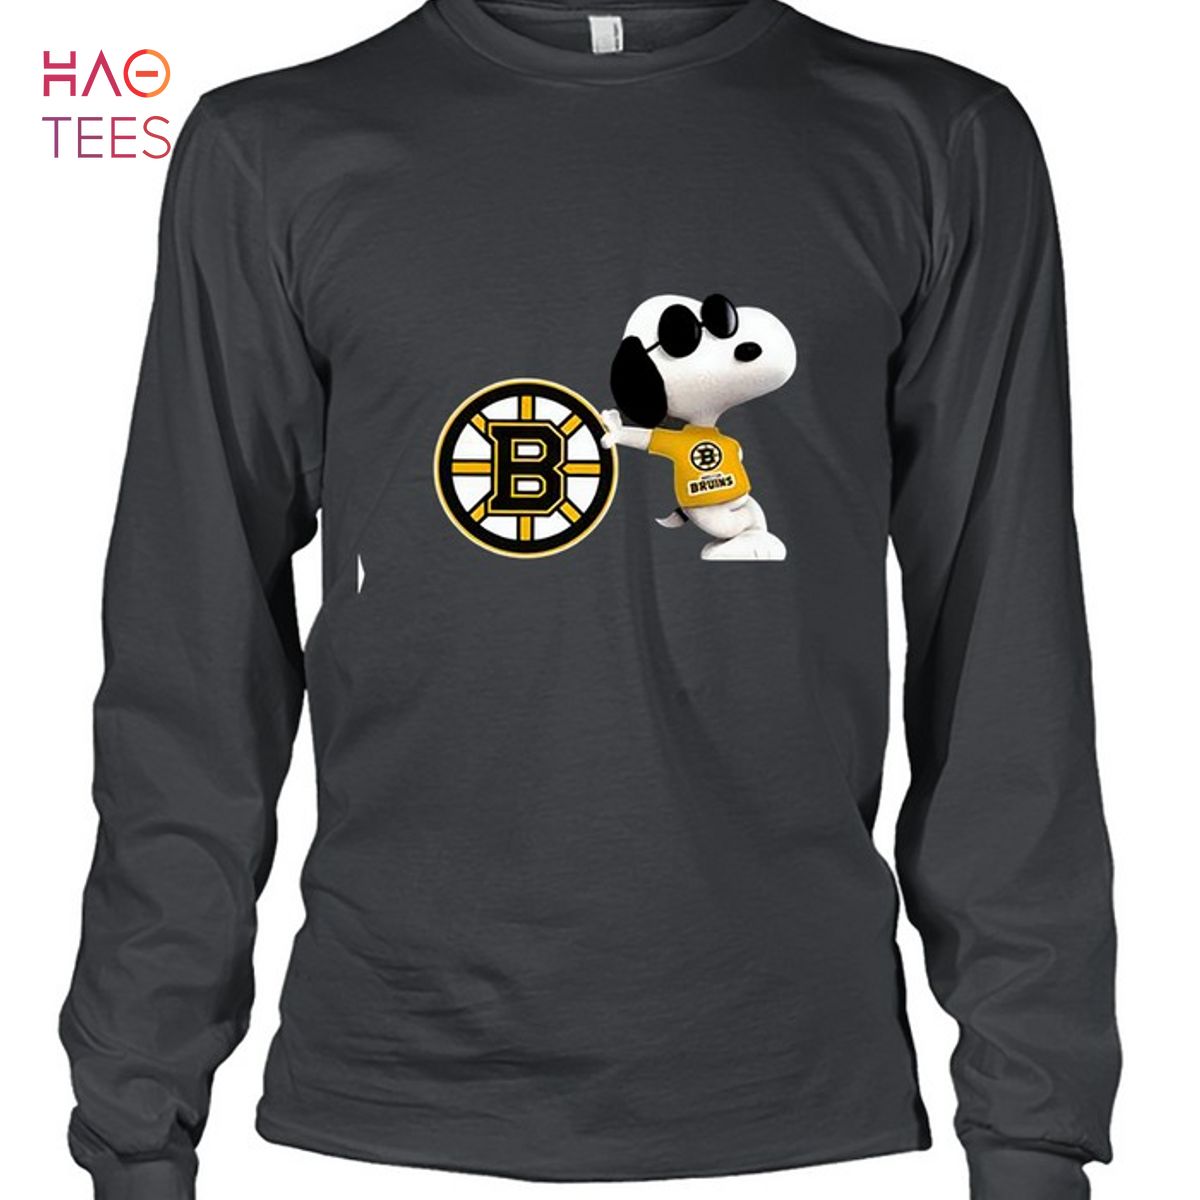 Boston Bruins Vintage Shirt For Fans - Trends Bedding